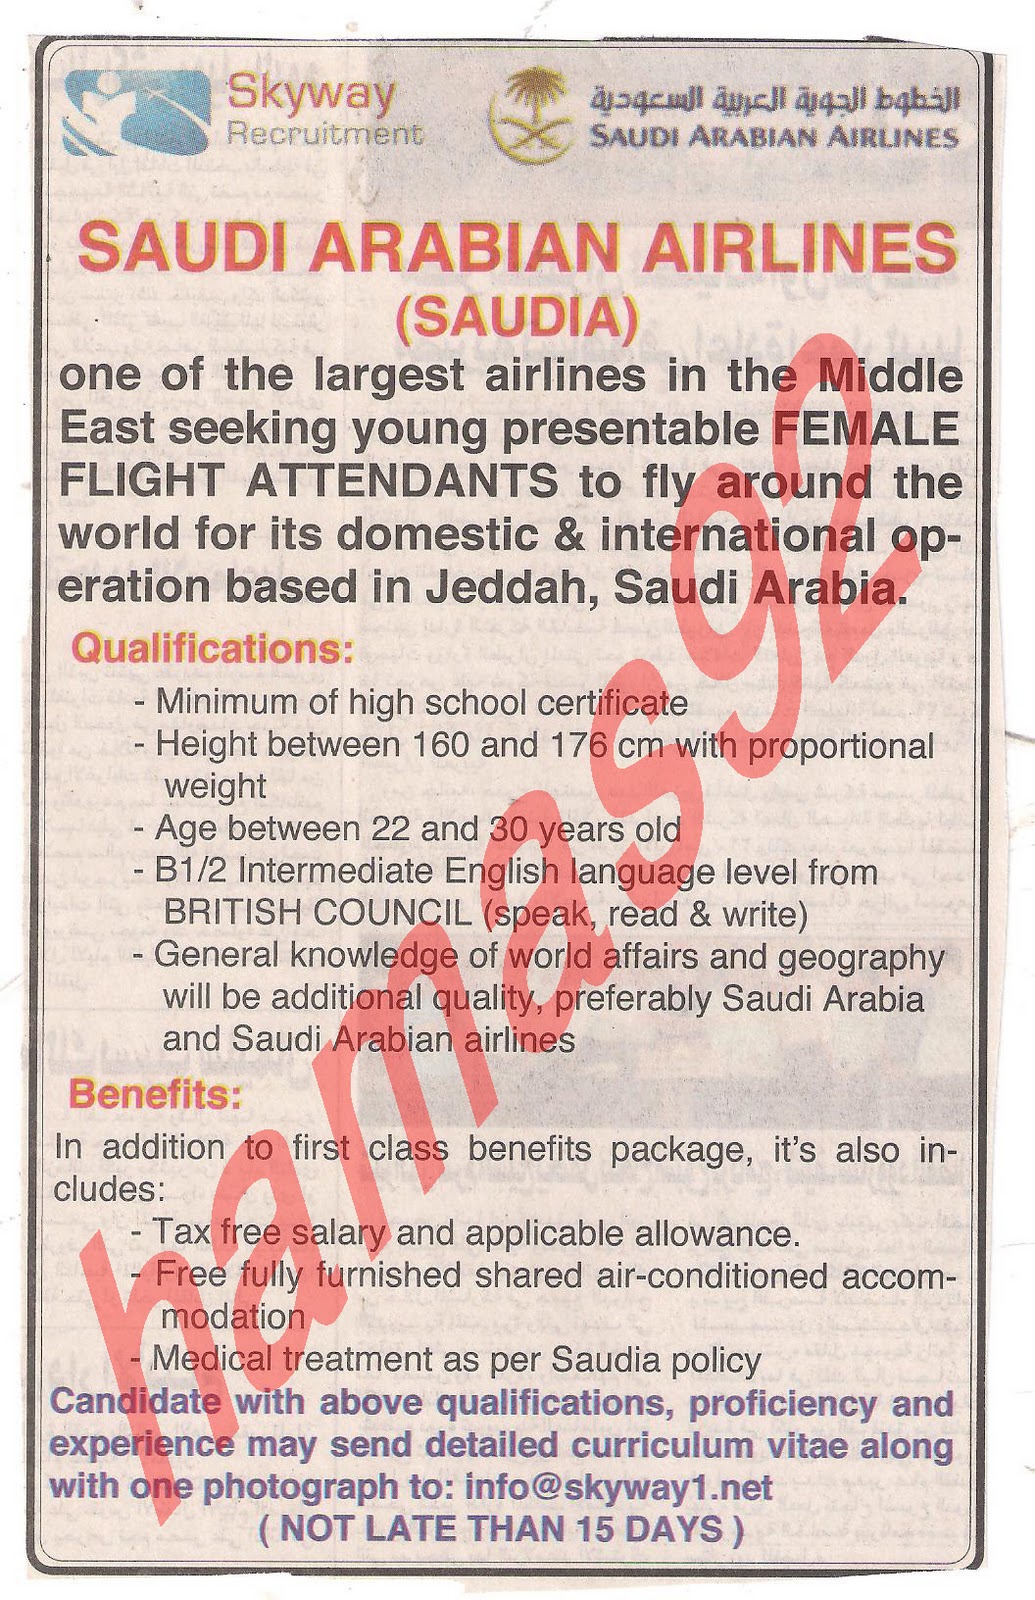 وظائف جريدة الاخبار الثلاثاء 22\11\2011  وظائف الخطوط الجوية السعودية Picture+001